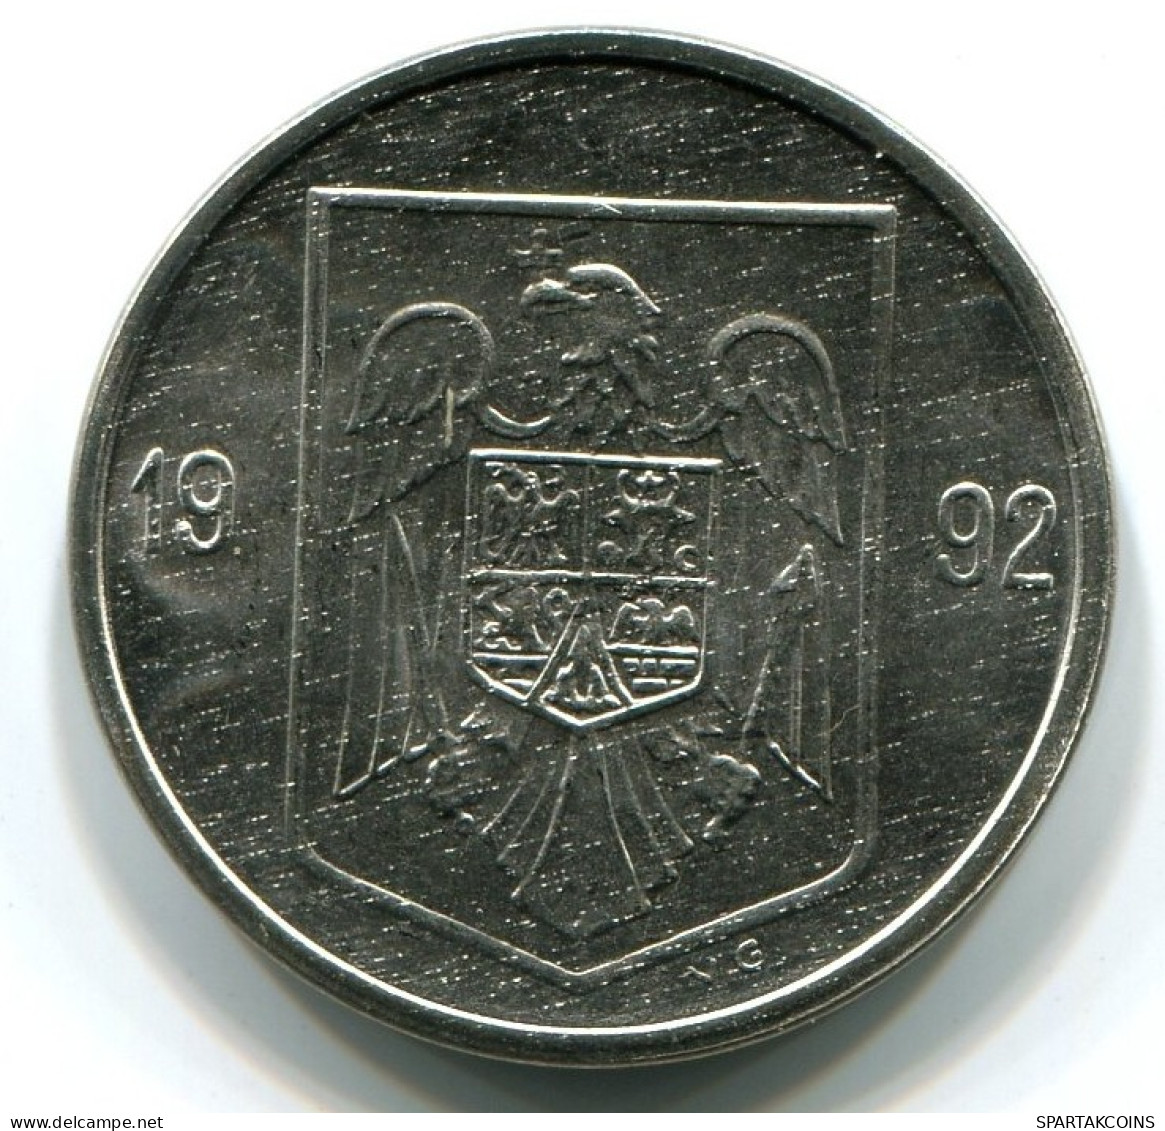 5 LEI 1992 ROMANIA UNC Eagle Coat Of Arms V.G Mark Coin #W11306.U.A - Roemenië